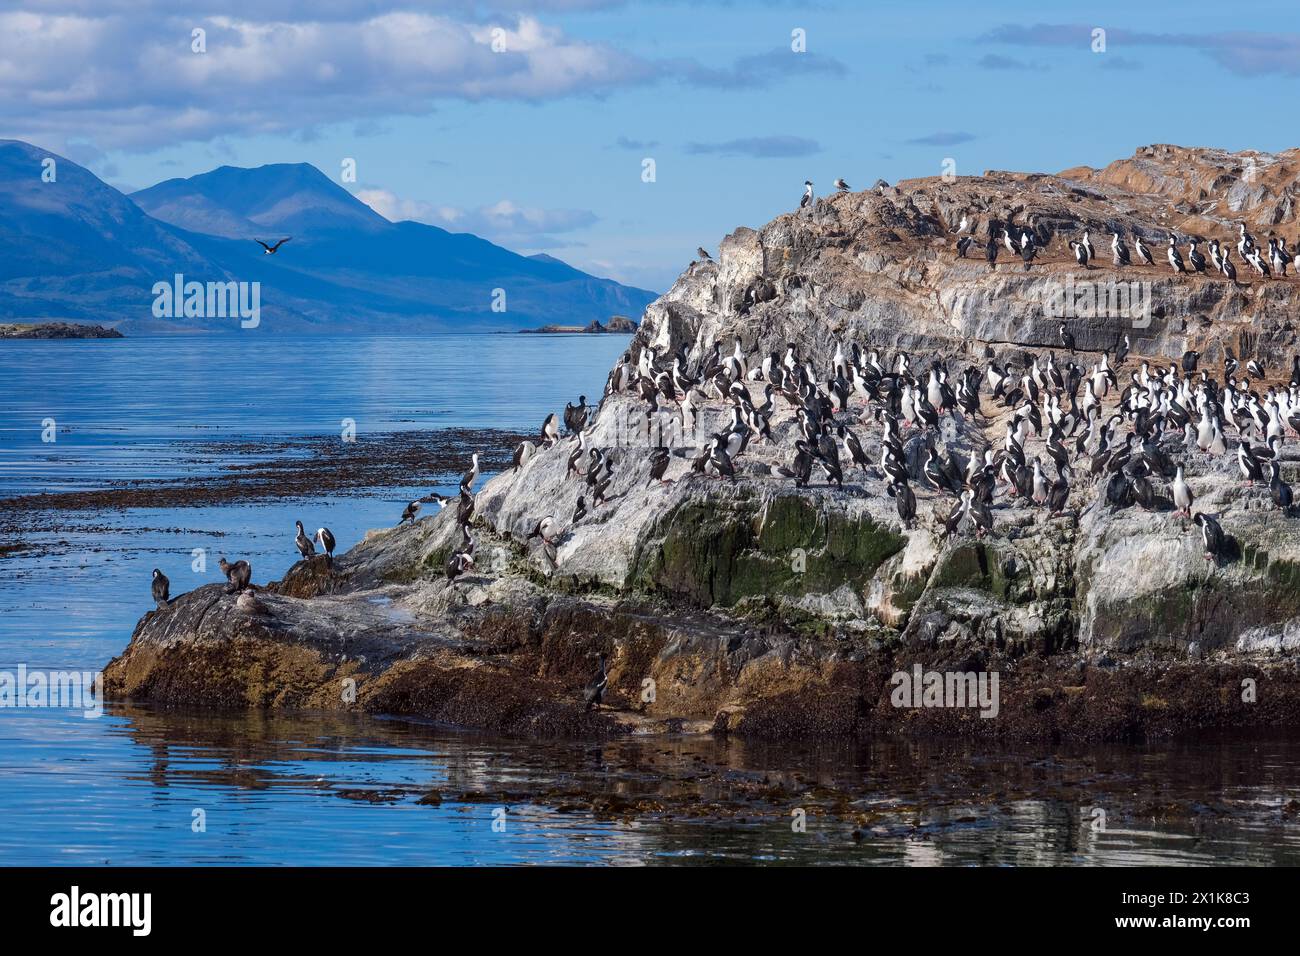 Ushuaia, Tierra del Fuego, Argentinien - Kormorane auf einem Felsen im Beagle-Kanal gelegen, ist der Beagle-Kanal eine natürliche Wasserstraße am südlichen Ti Stockfoto